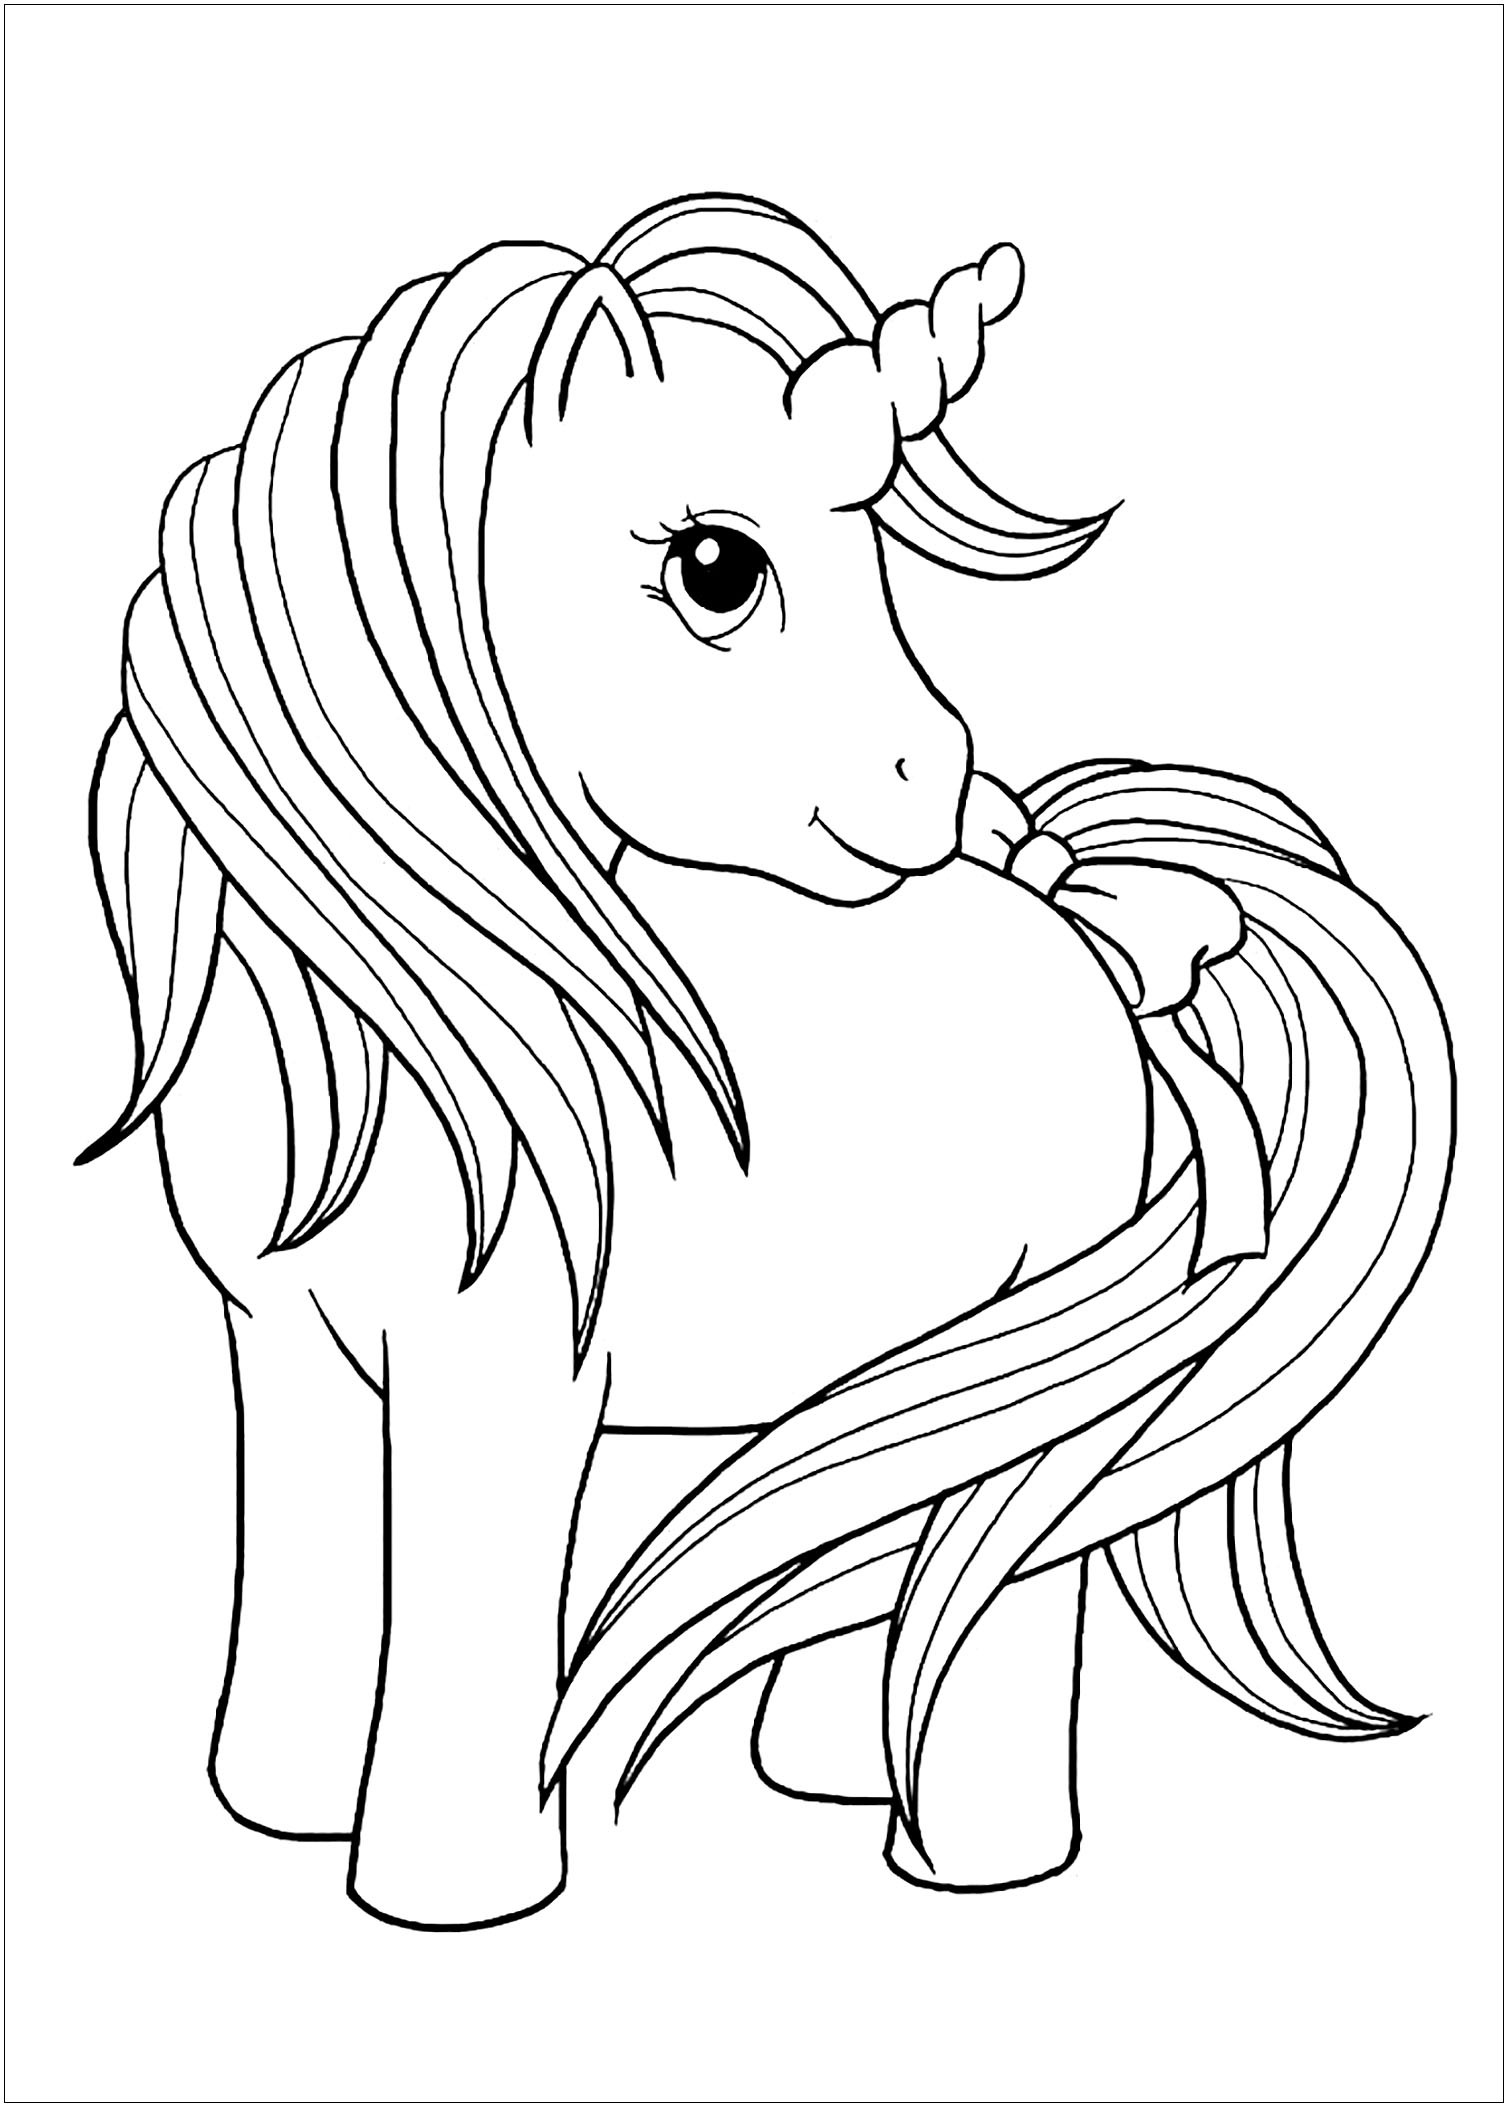 Dibujo de unicornio para imprimir y colorear